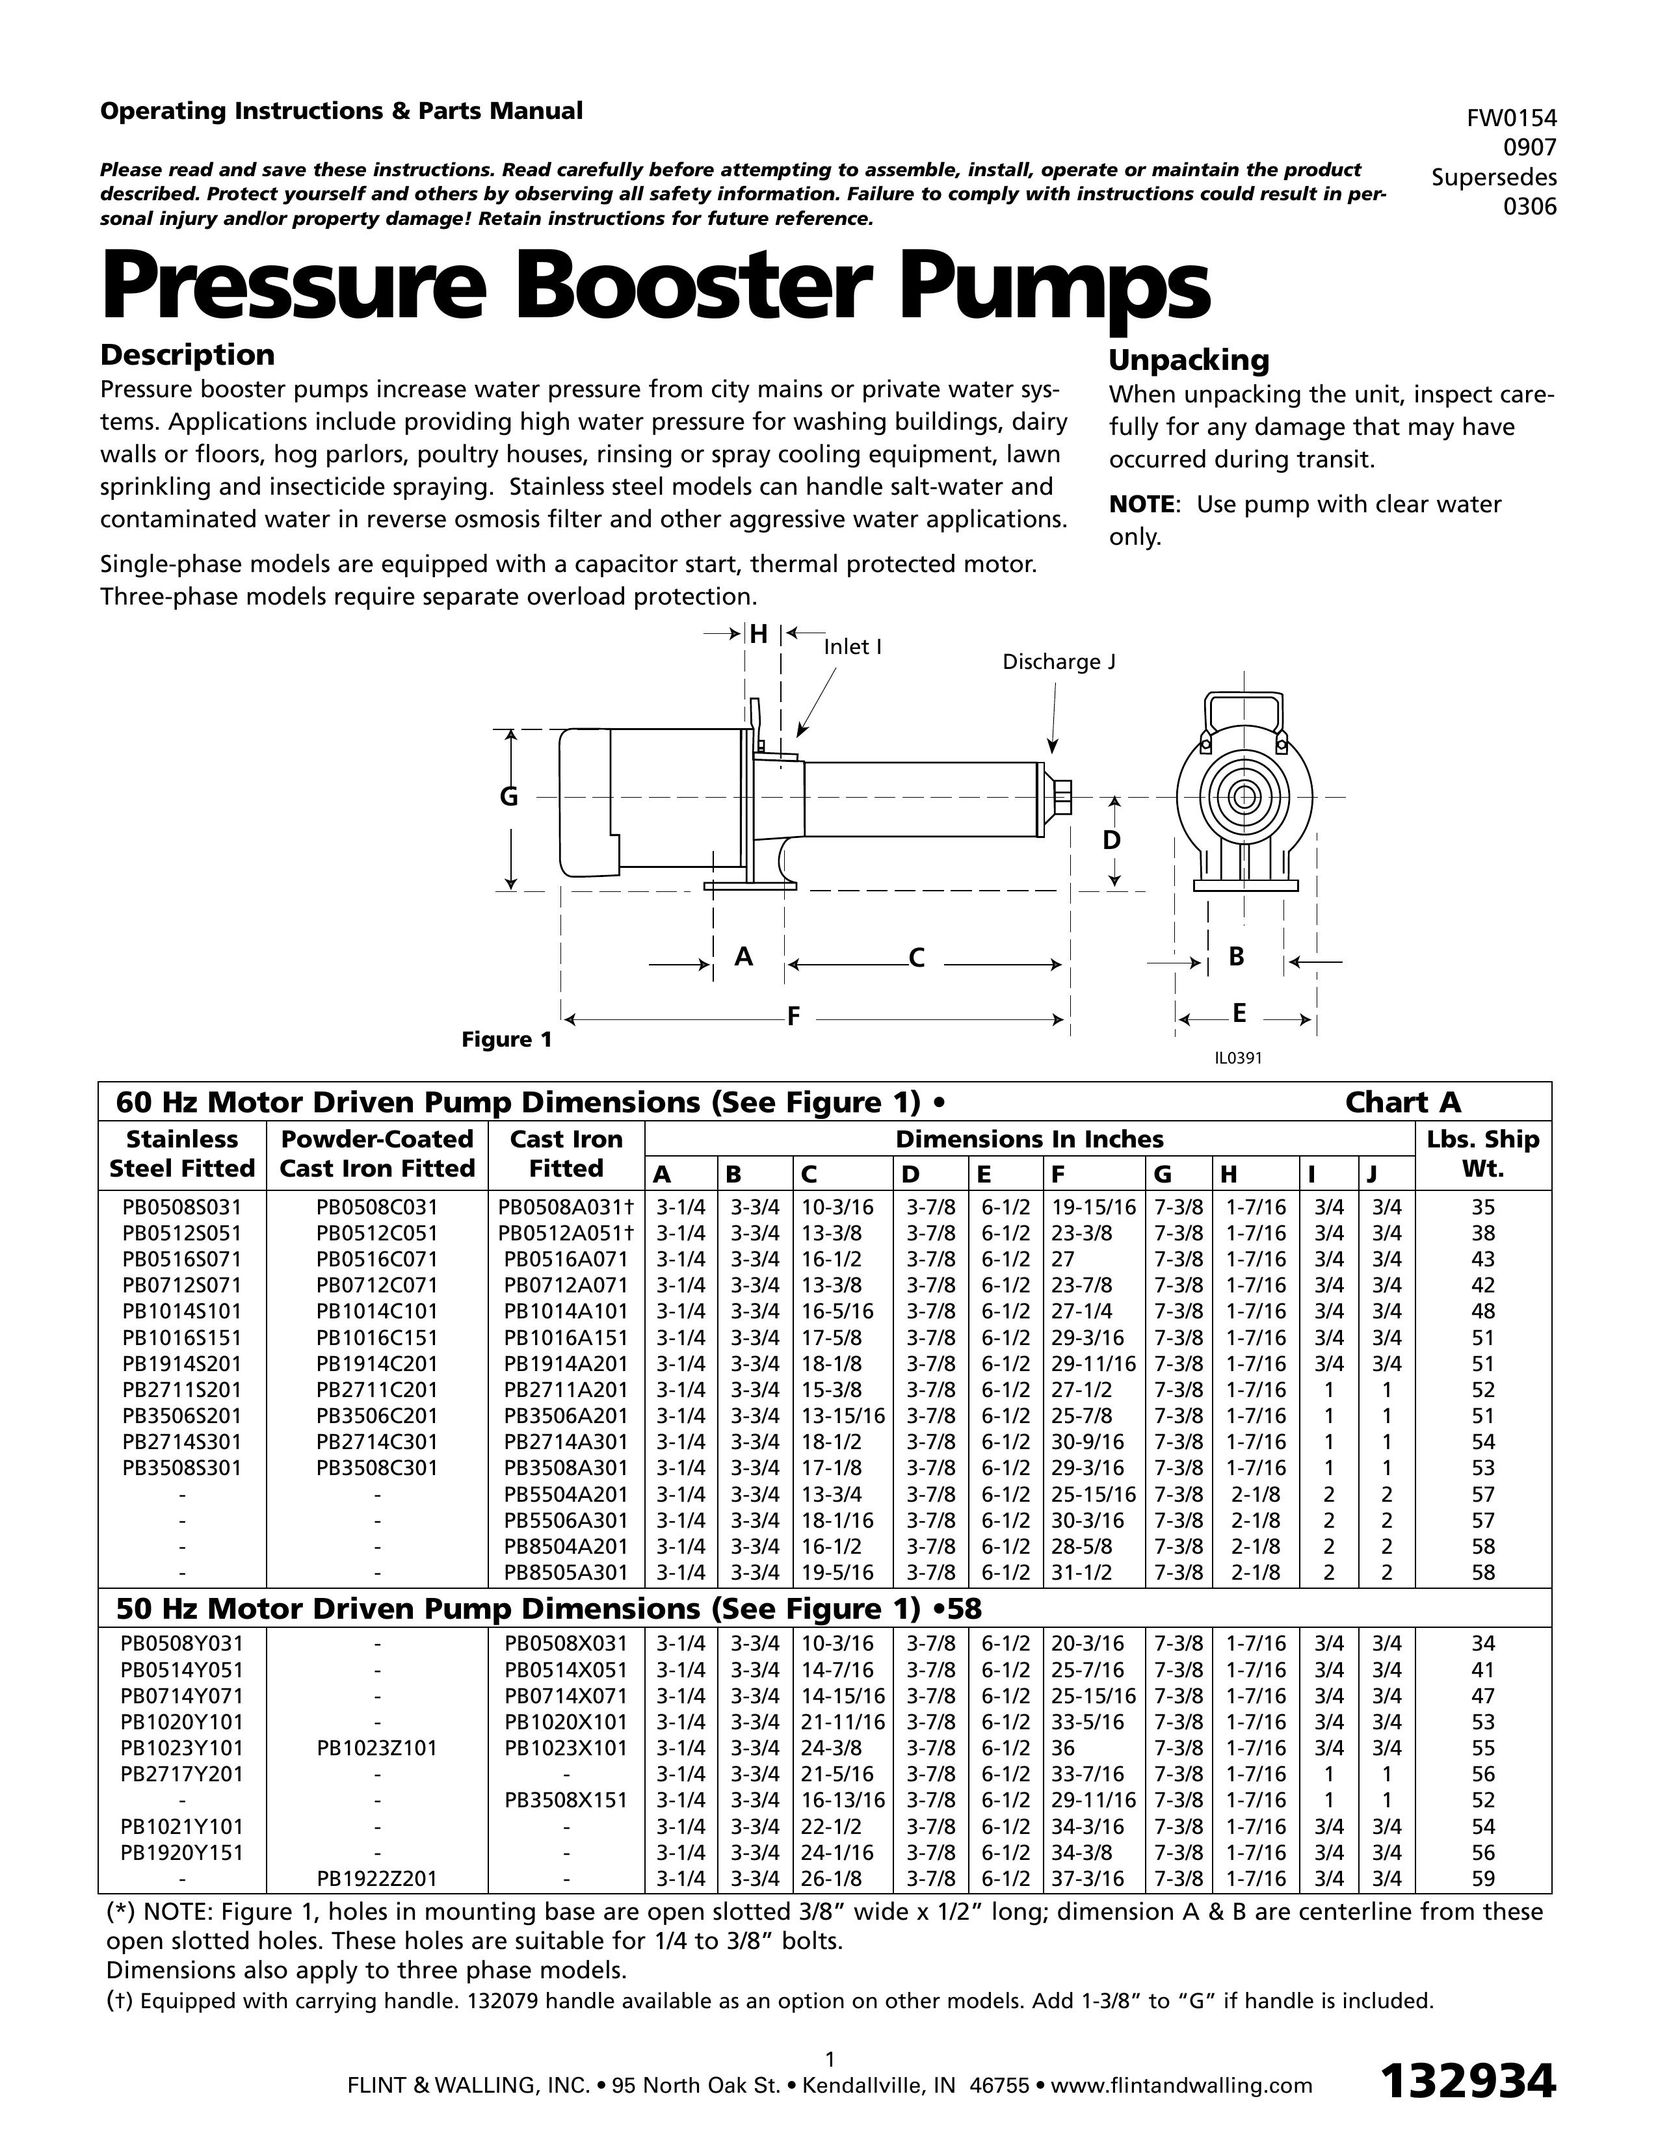 HP (Hewlett-Packard) 0907 Water Pump User Manual